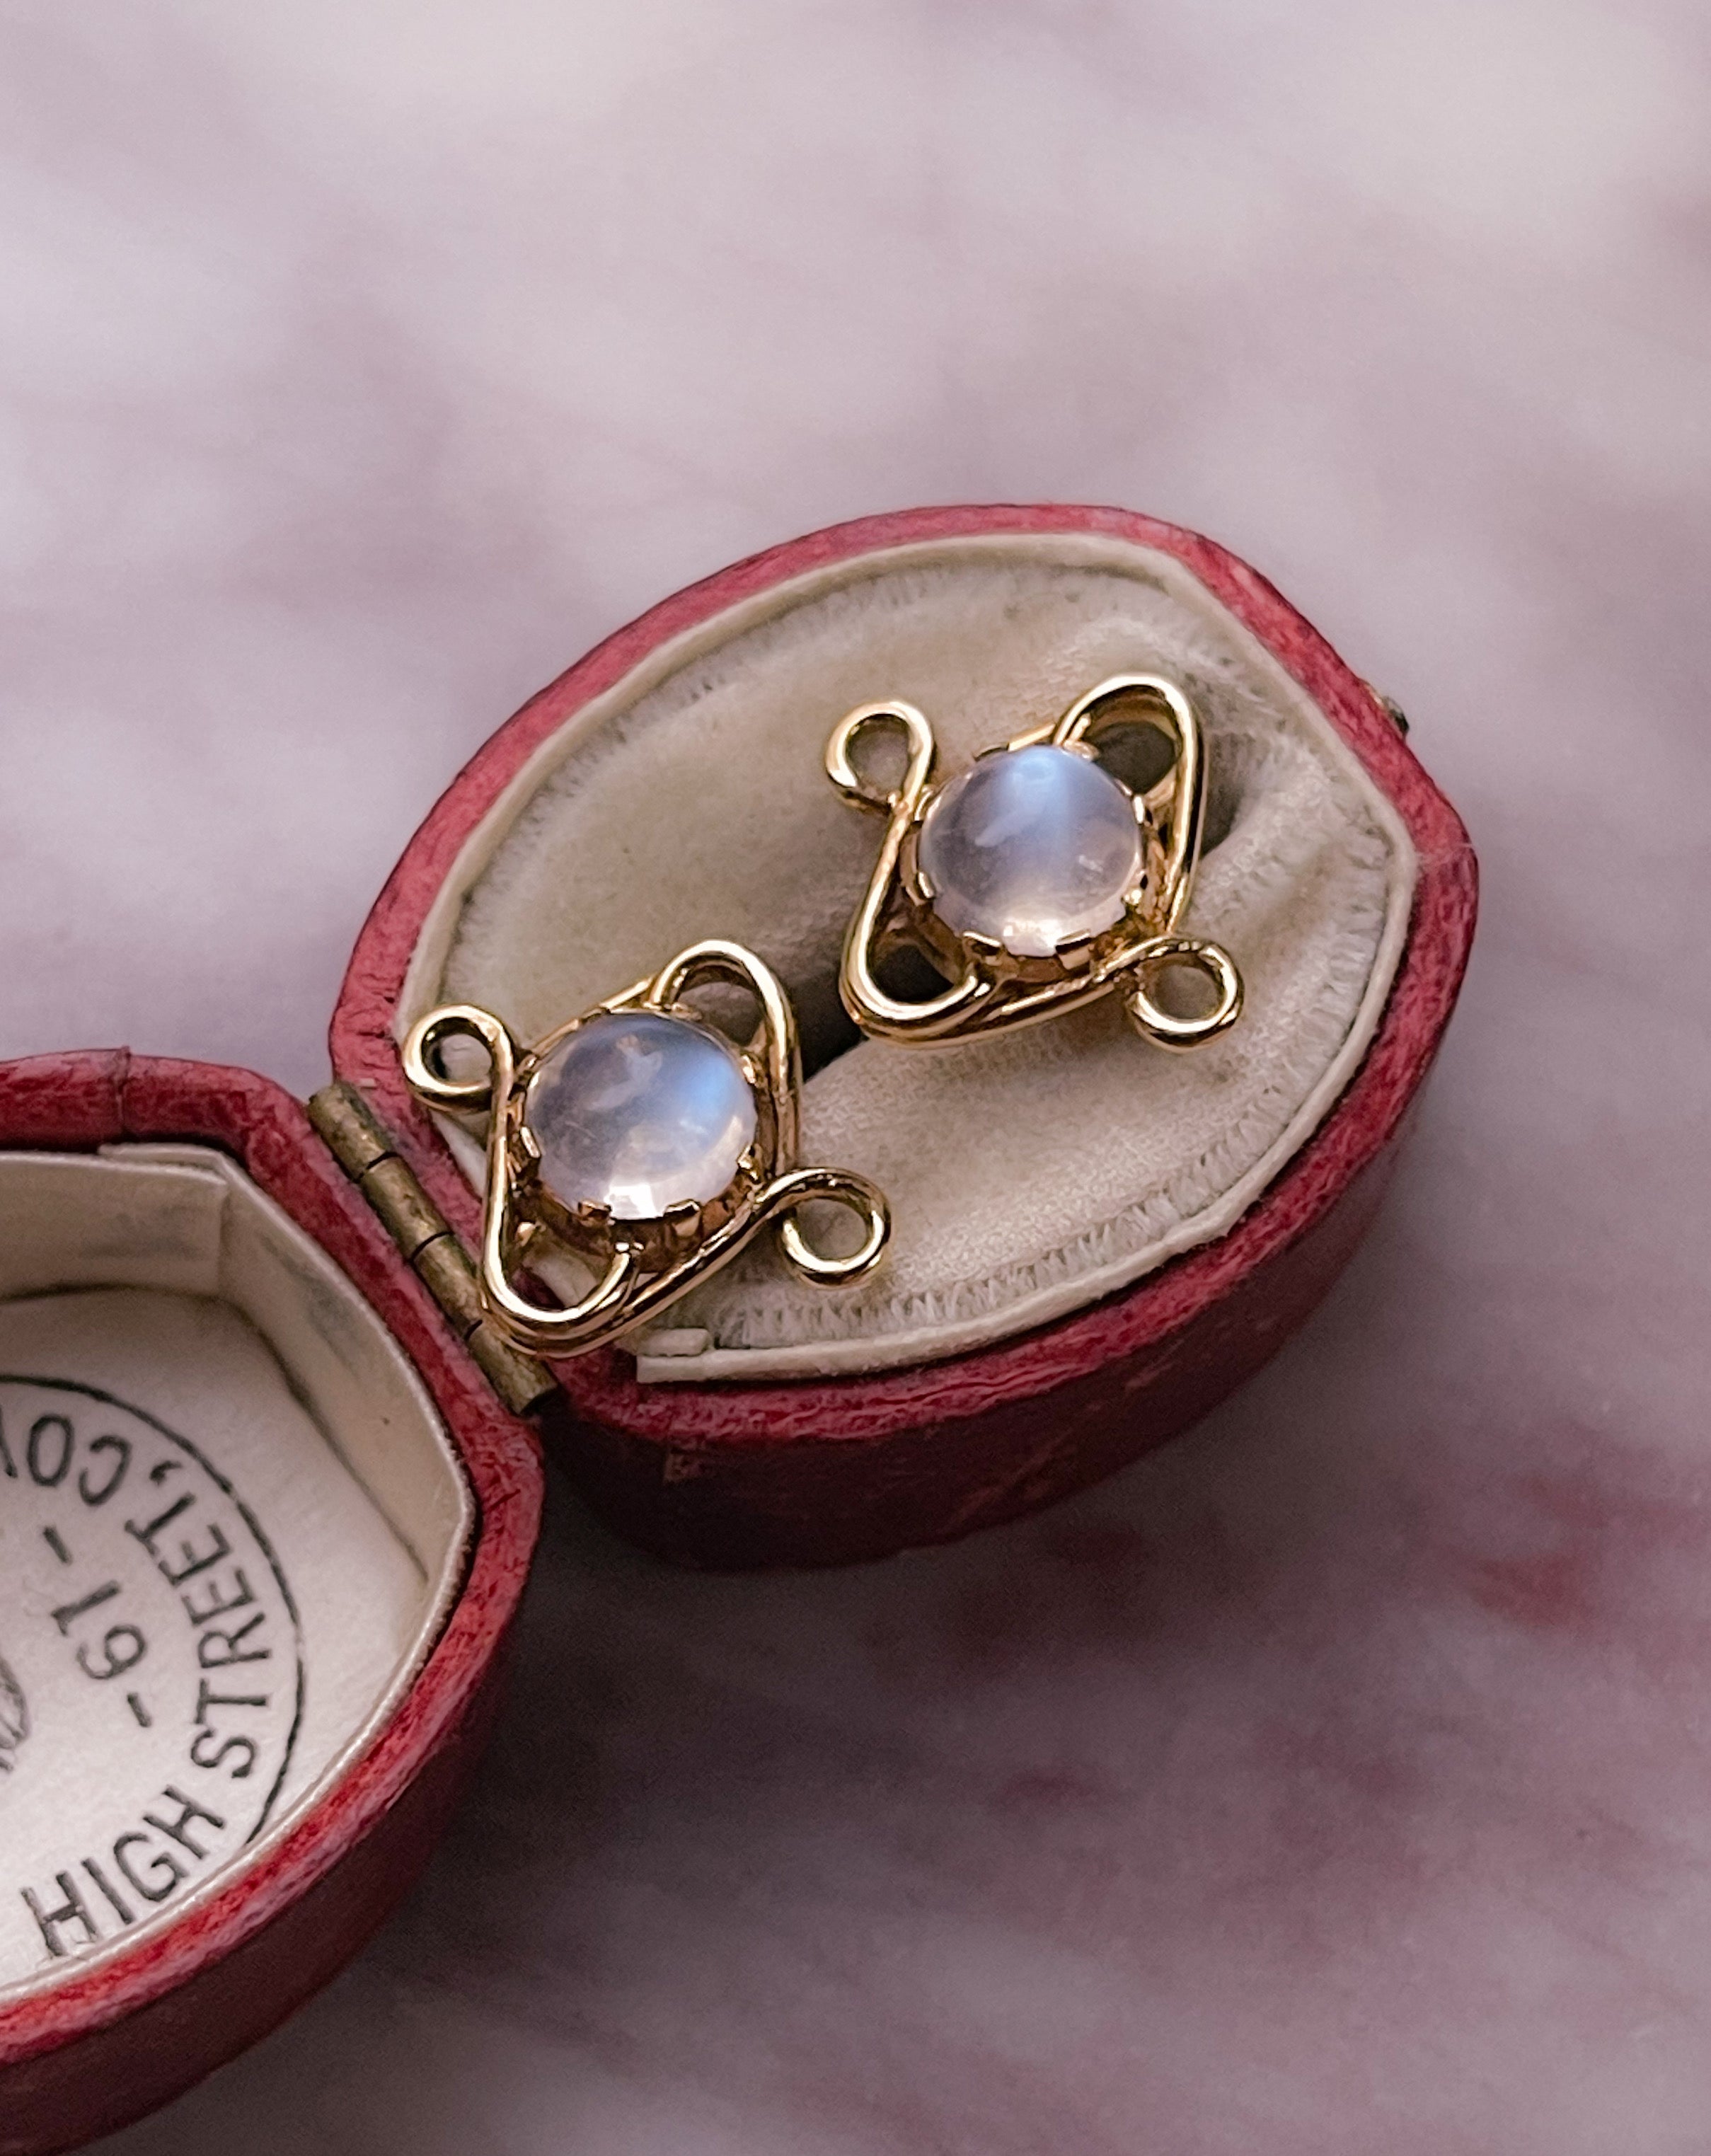 Darling Pair of Moonstone Earrings in 18k